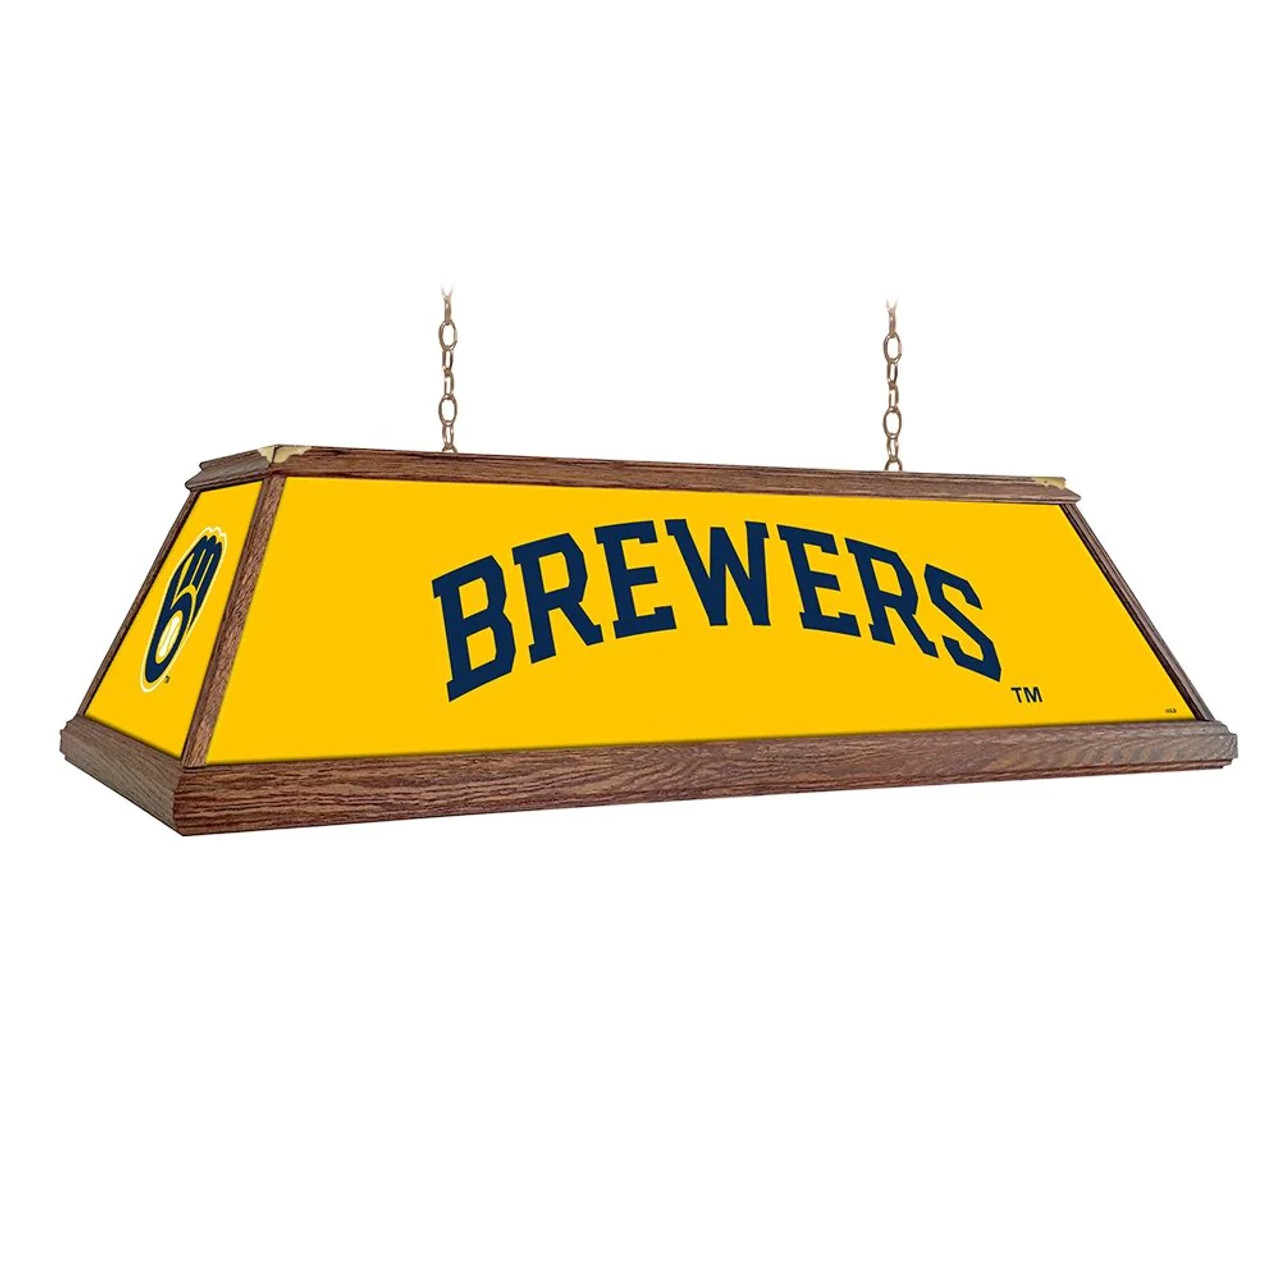 MBBREWERS-330-01B, MIL, Milwaukee, Brewers, Premium, Wood, Billiard, Pool, Table, Light, Lamp, MLB, The Fan-Brand, "B" Version, 704384966050